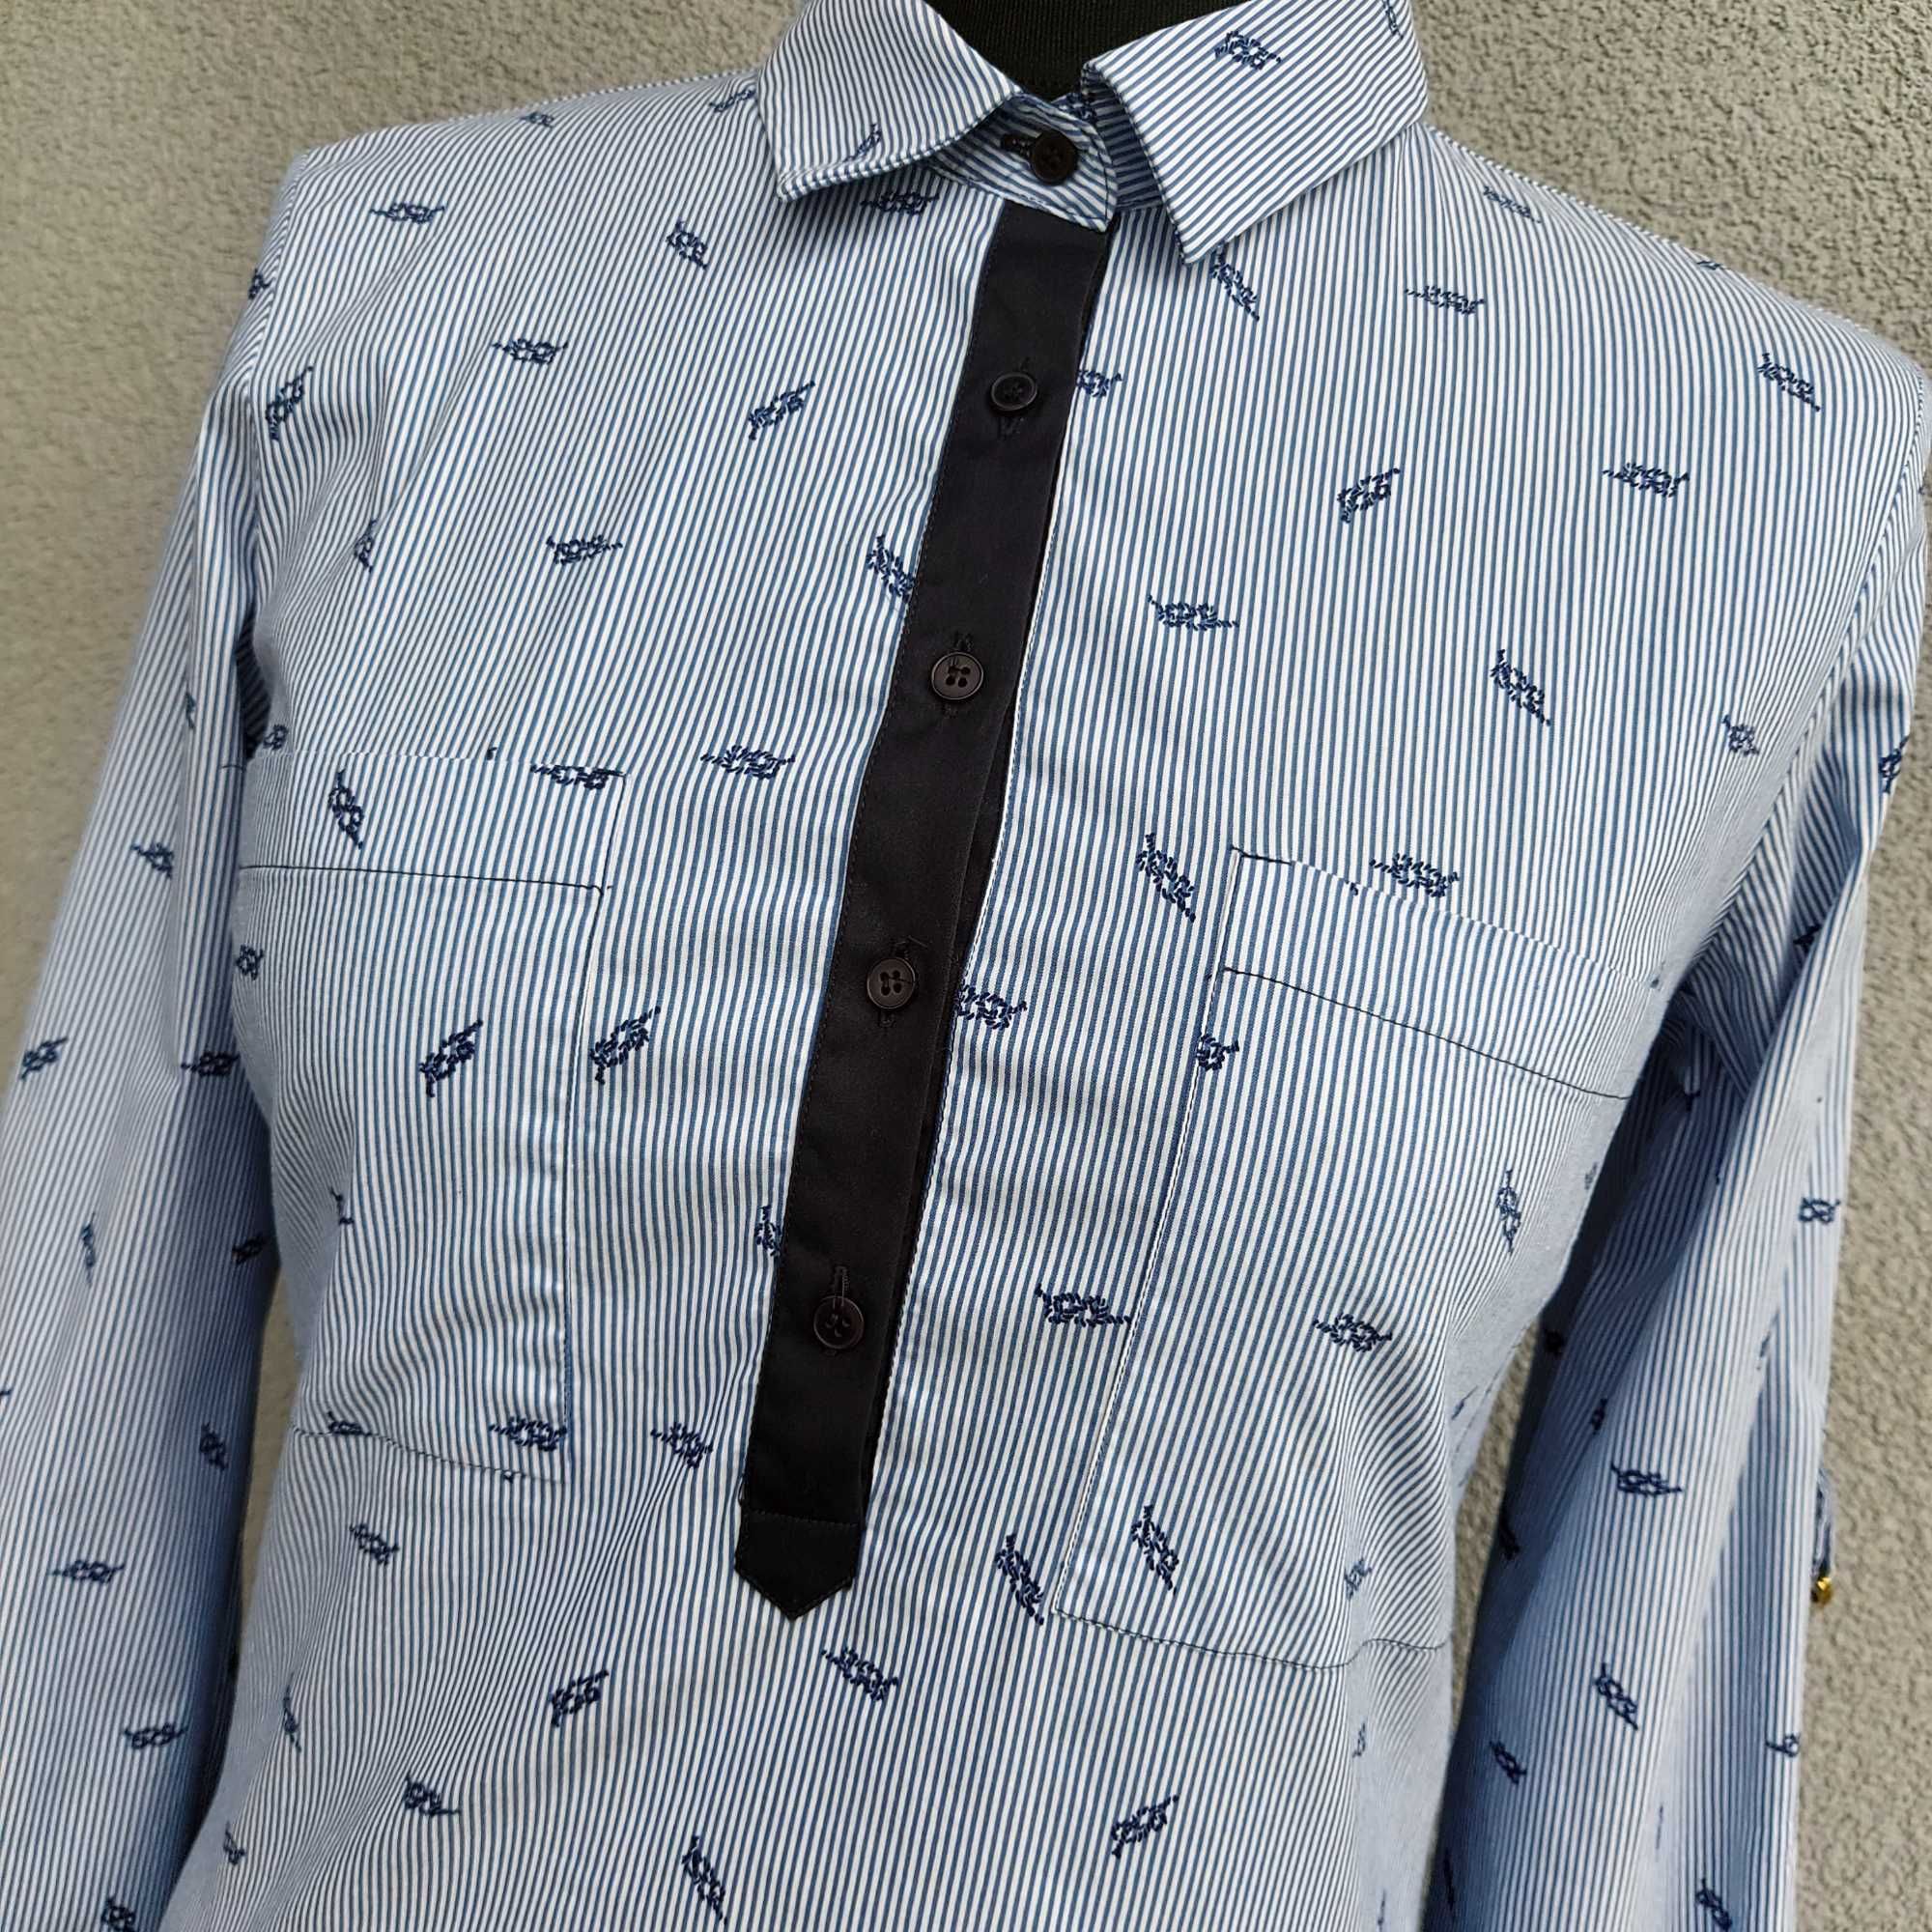 Koszula Zara - S - 36 - 8 jasnoniebieska z granatowym printem w paski